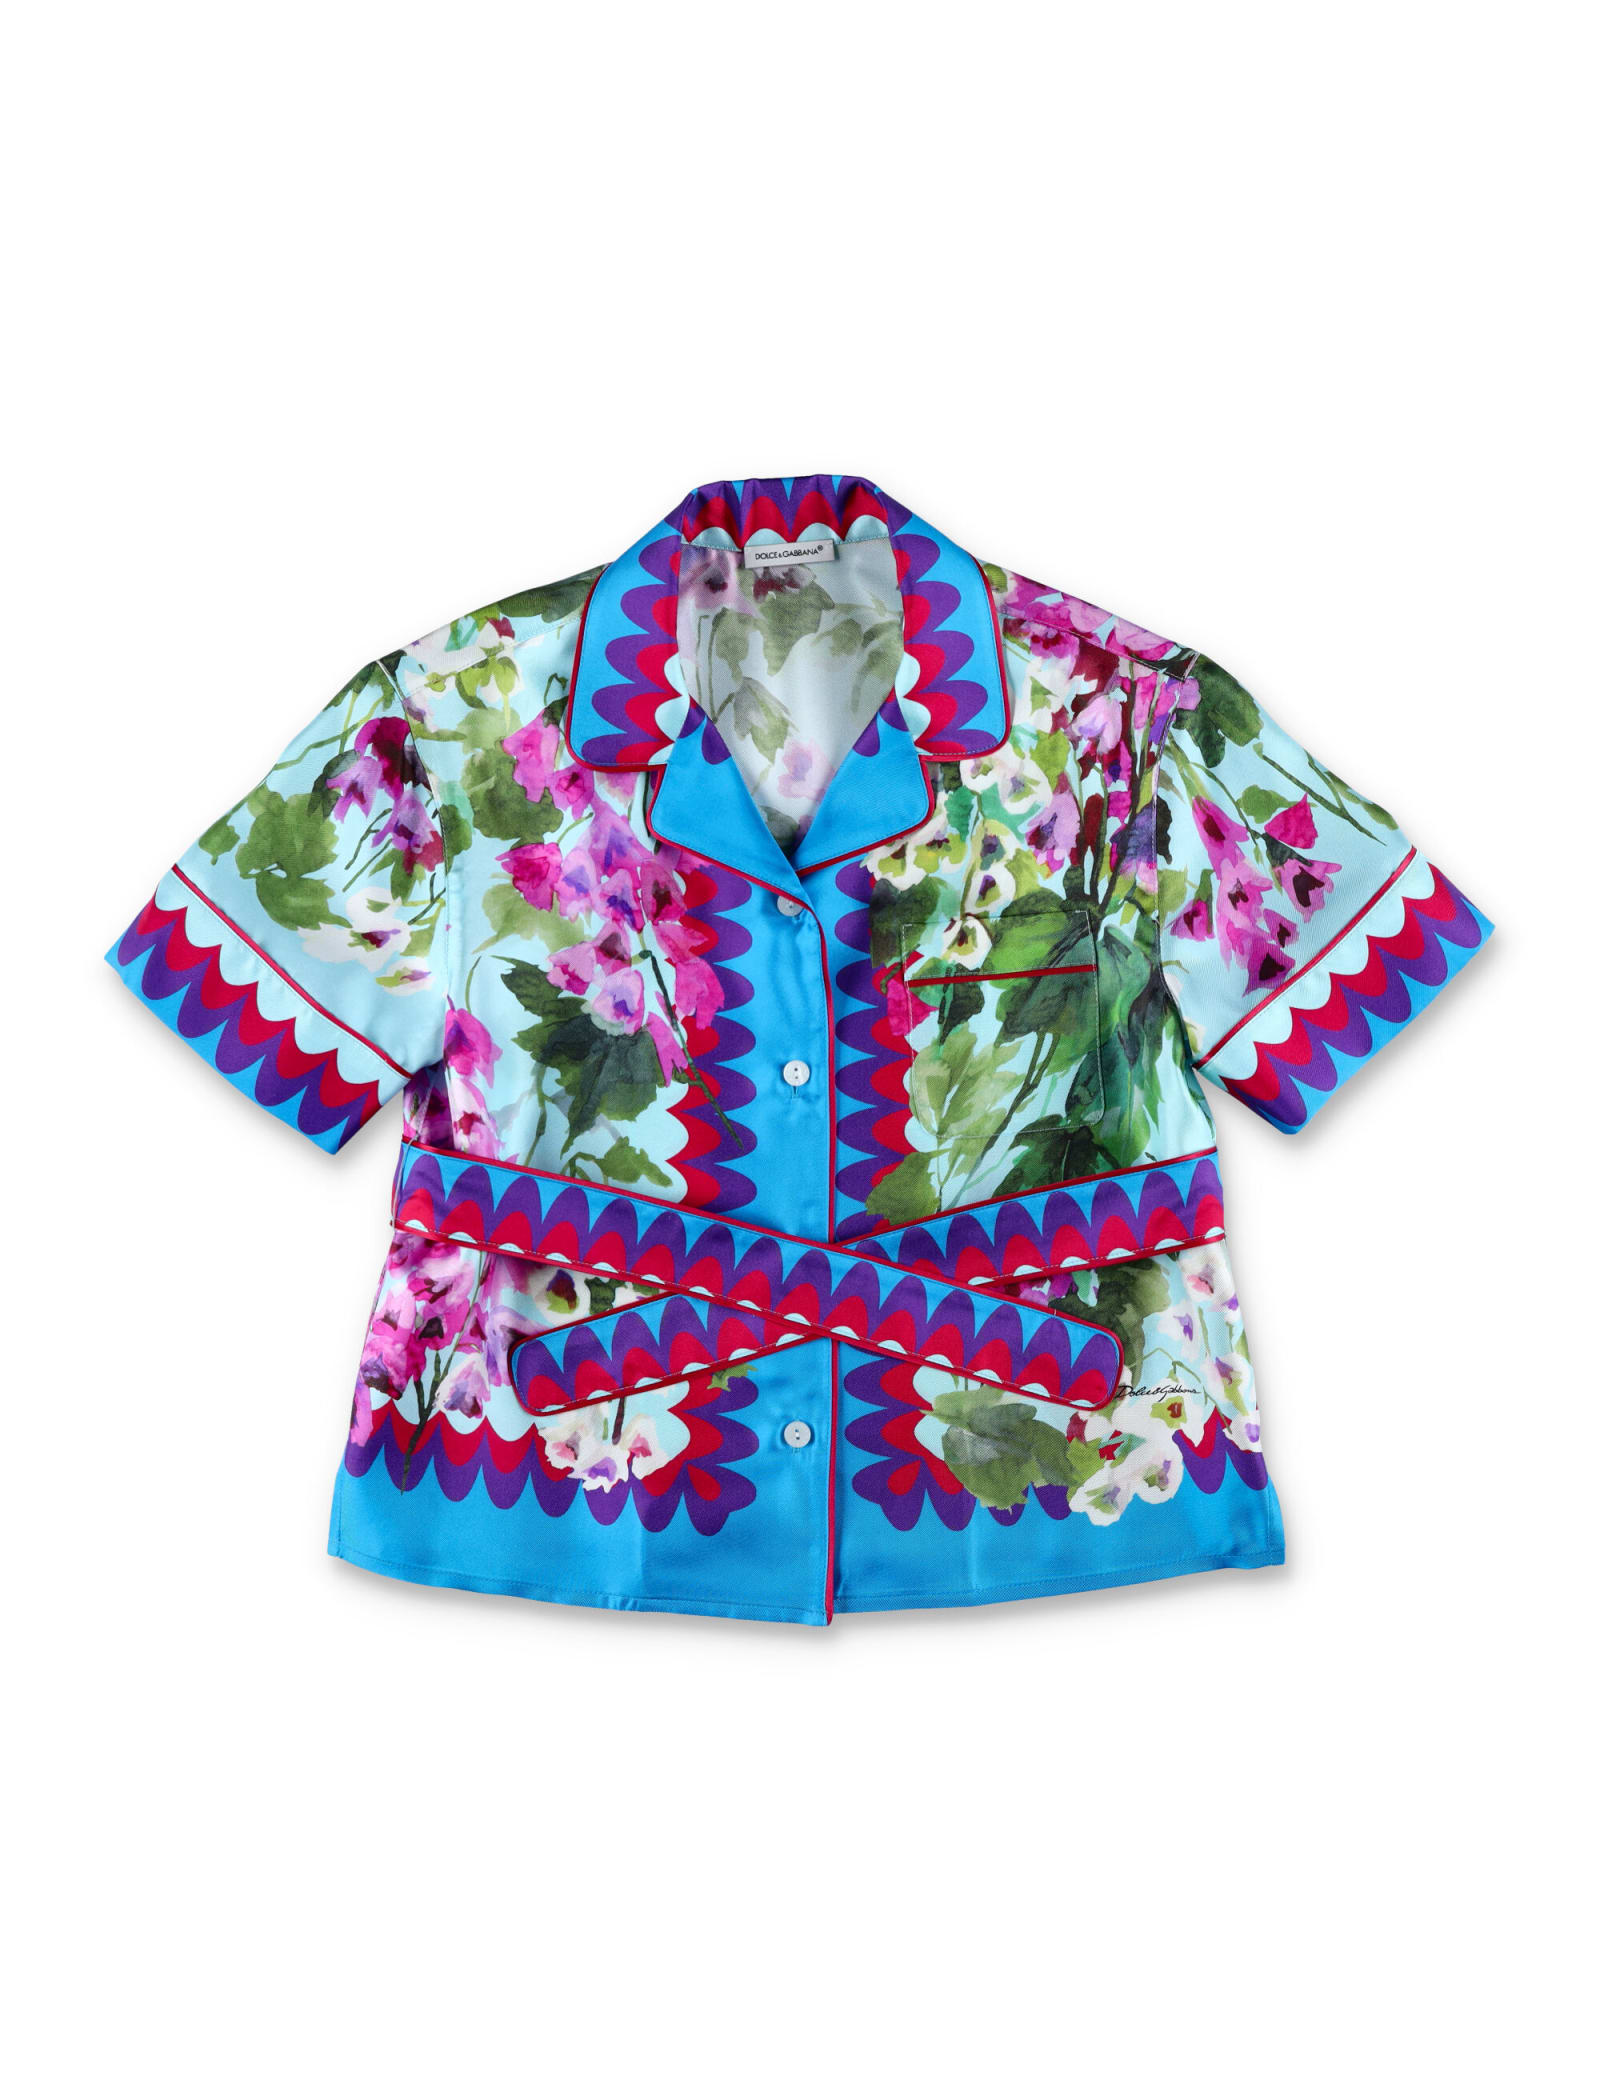 Dolce & Gabbana Bluebells Silk Shirt